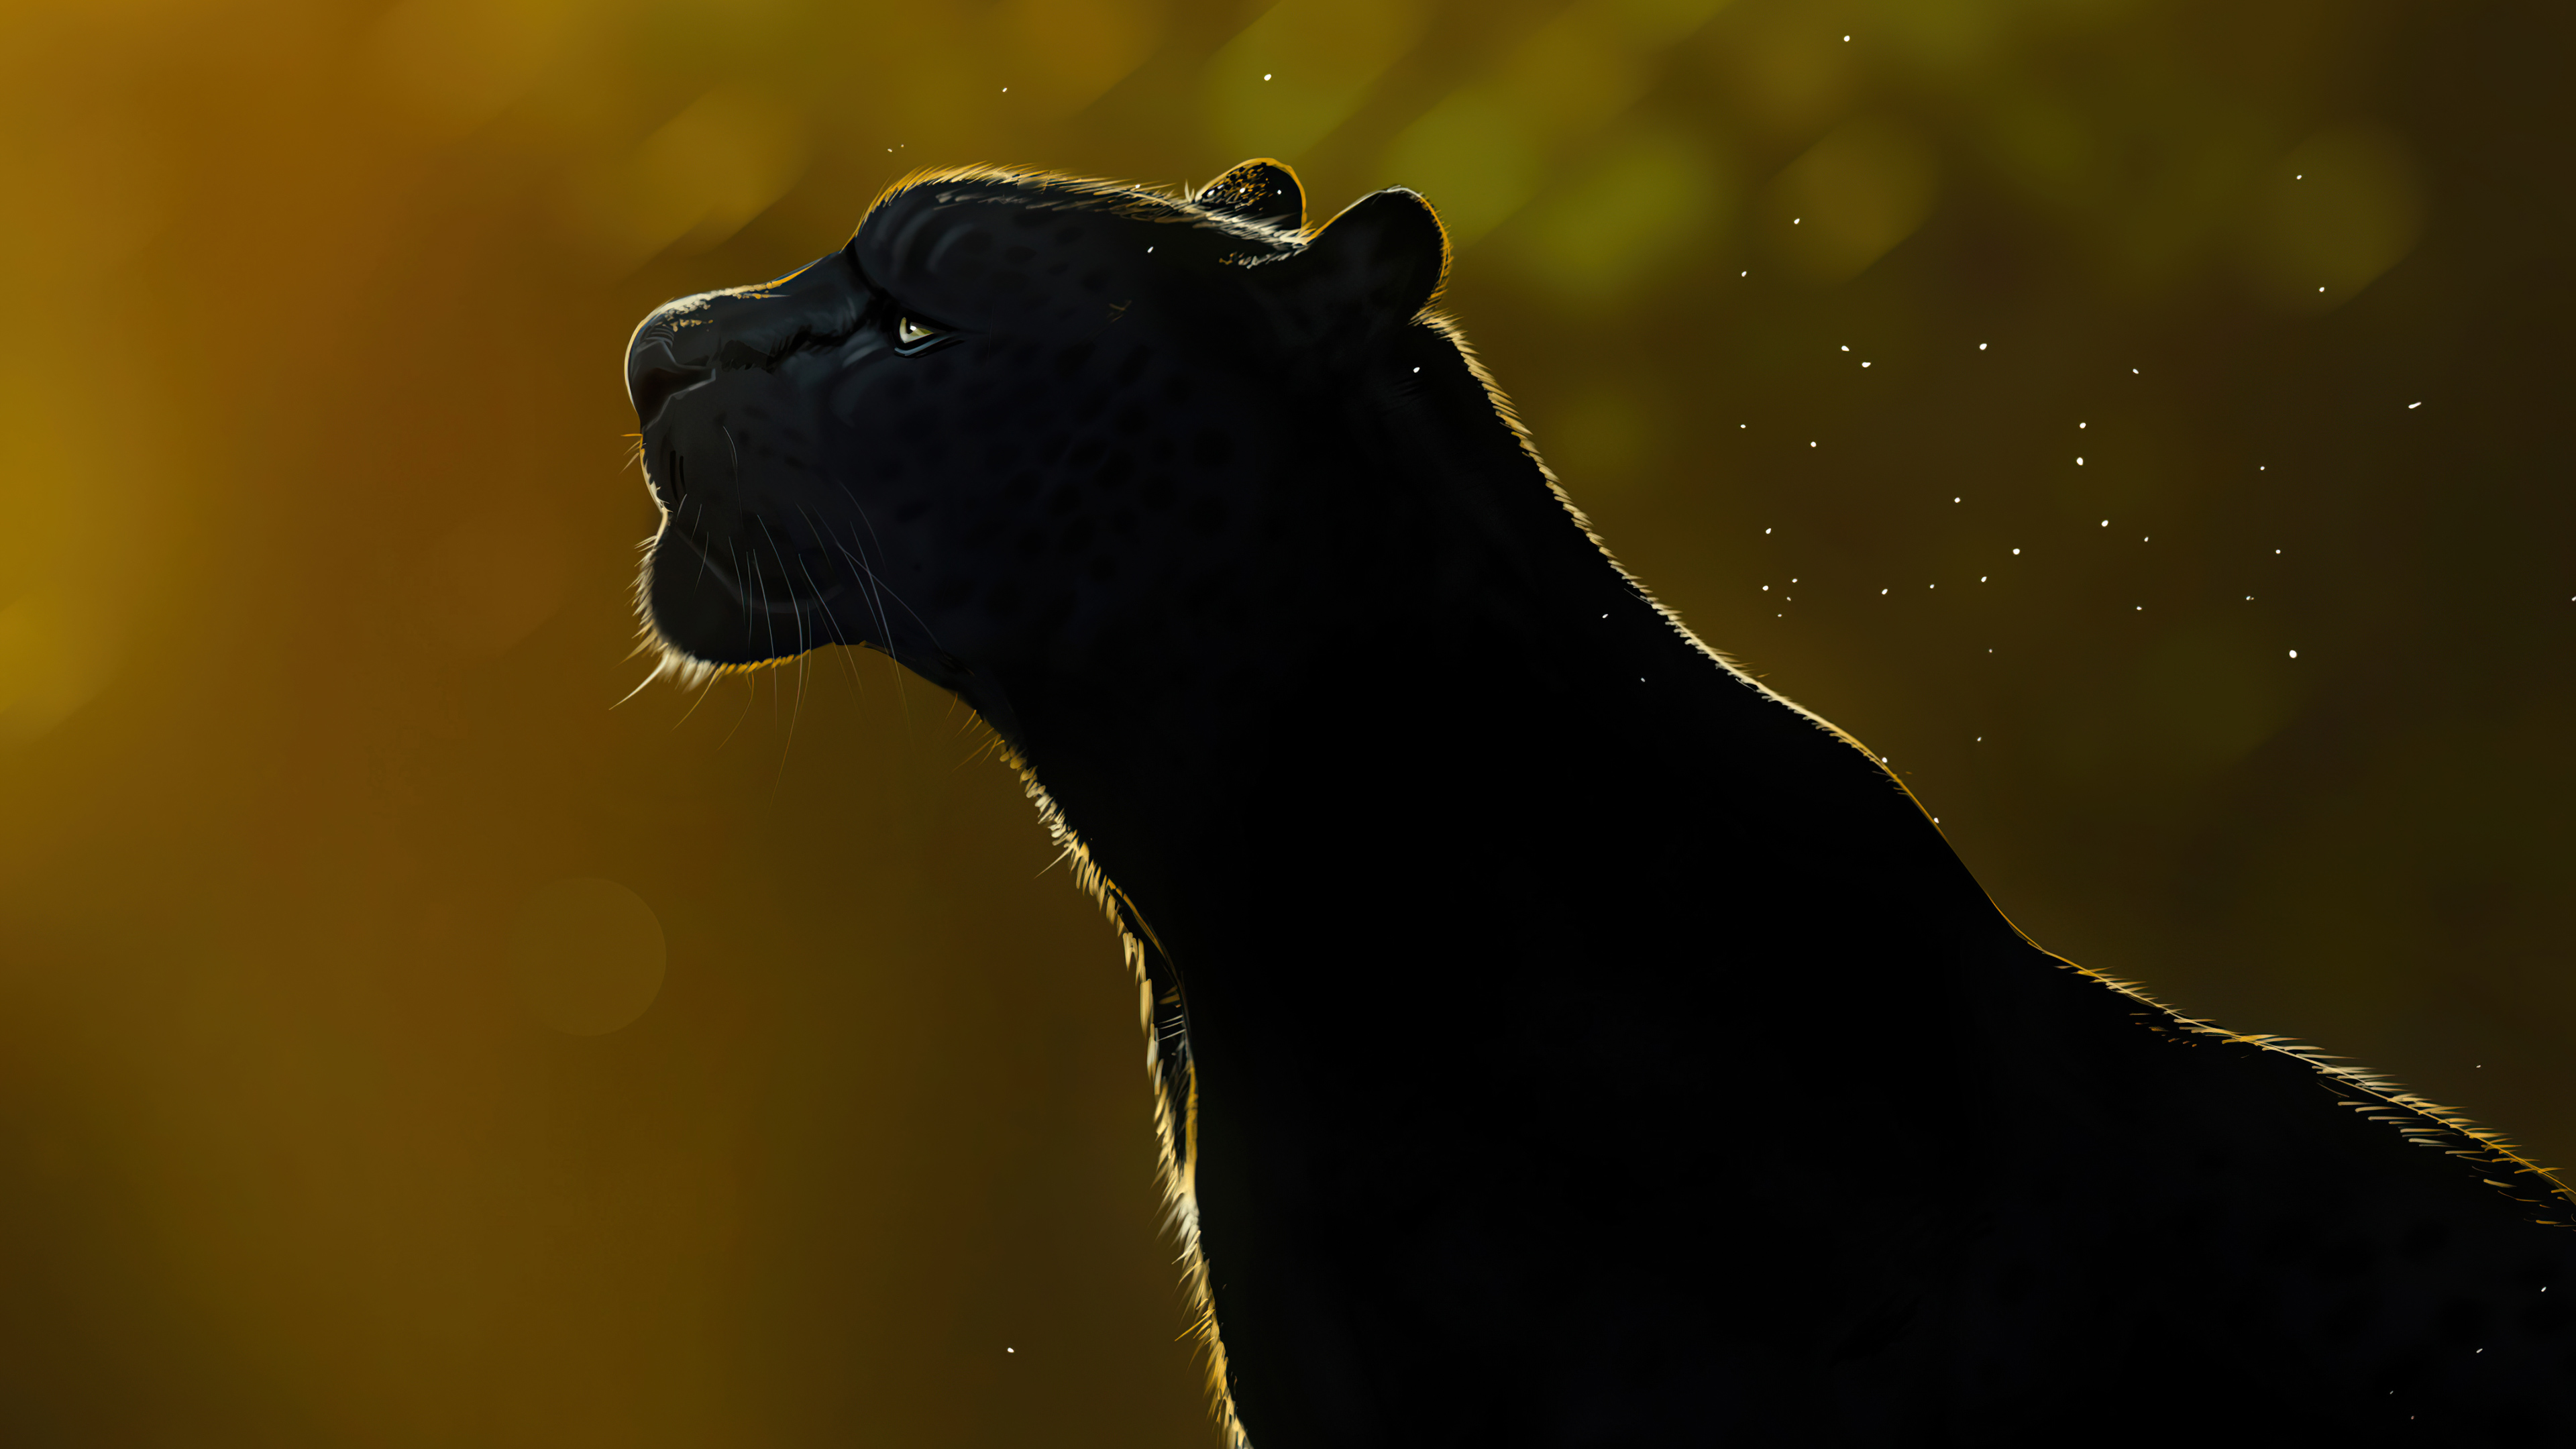 Free Spirit Black Panther 4k Wallpaperhd Artist Wallpapers4k